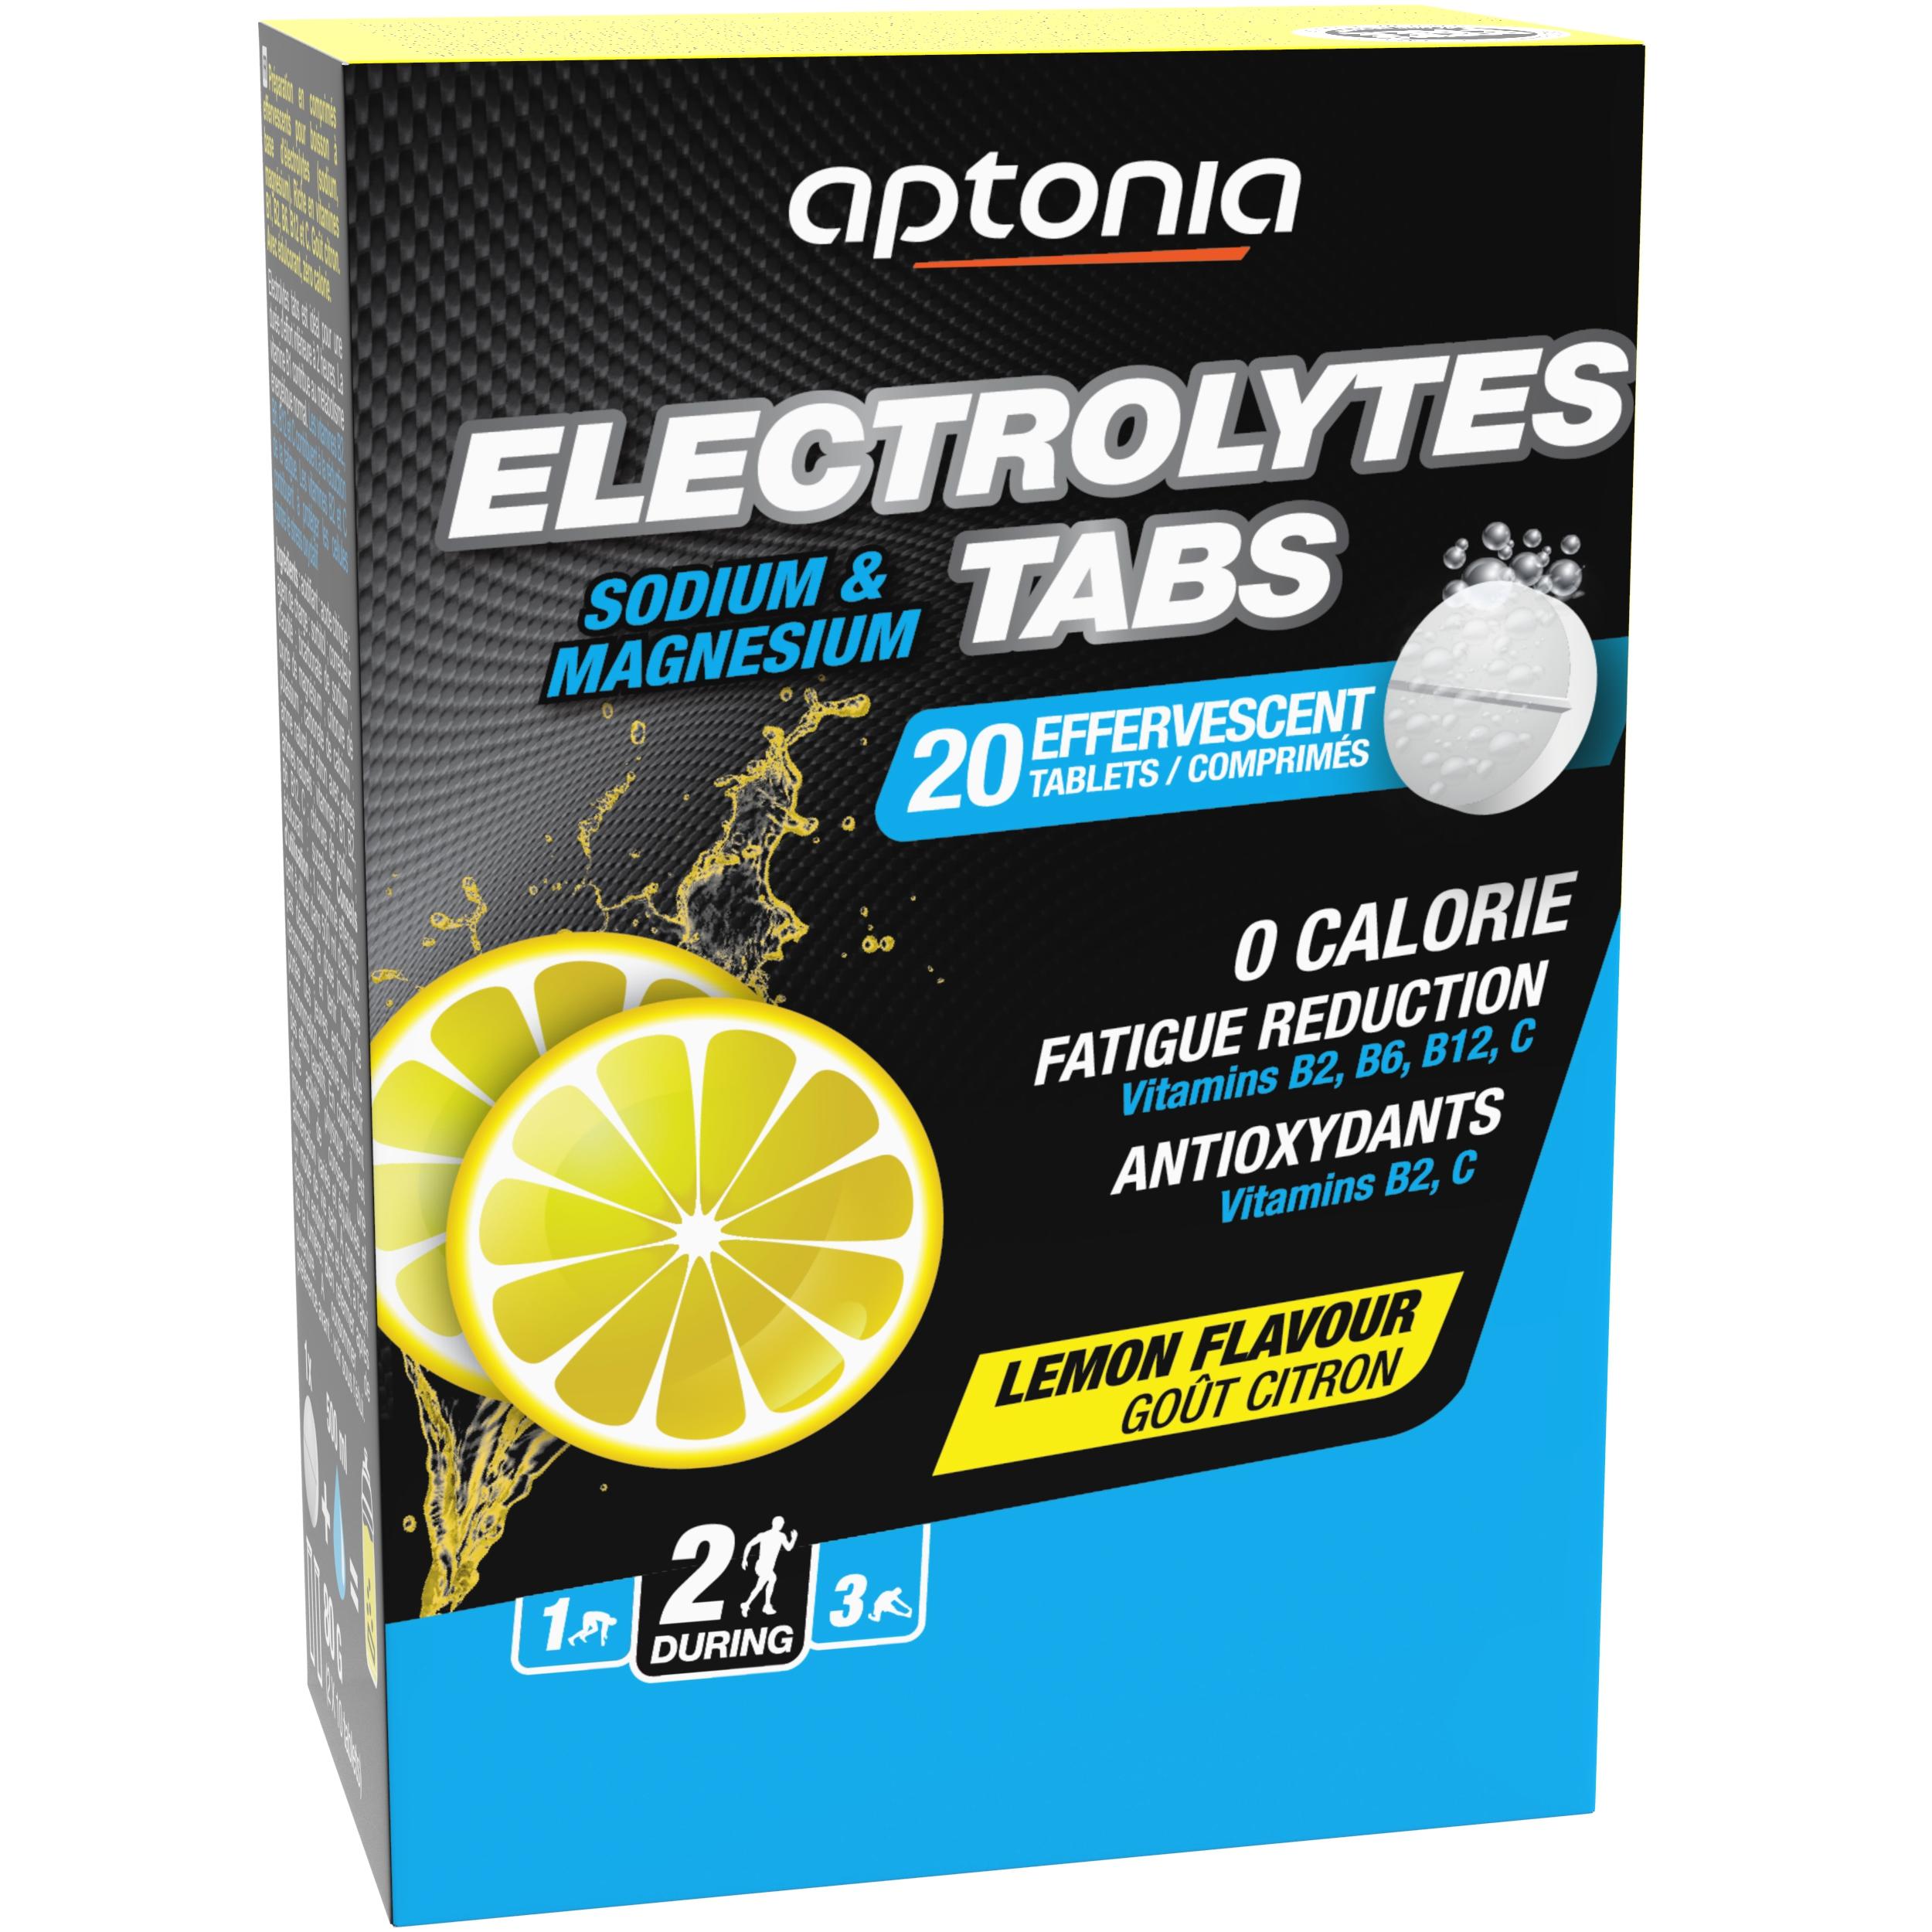 electrolytes tabs aptonia